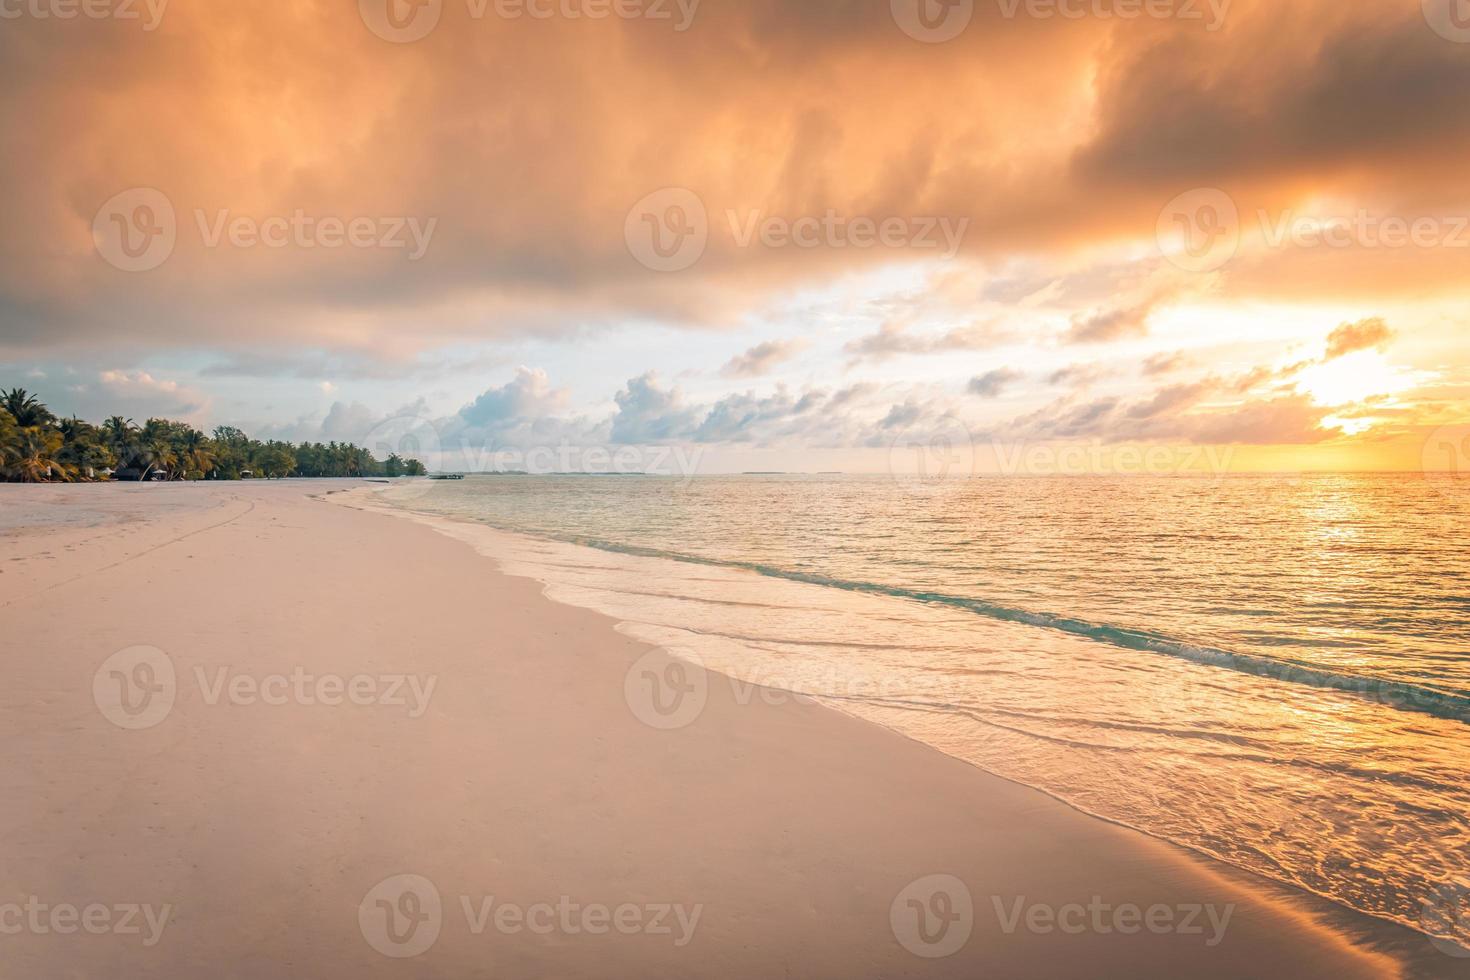 primer plano de la playa del mar y el colorido cielo del atardecer. paisaje panorámico de la playa. playa tropical vacía y paisaje marino. cielo de puesta de sol naranja y dorado, arena suave, calma, luz solar tranquila y relajante, estado de ánimo de verano foto